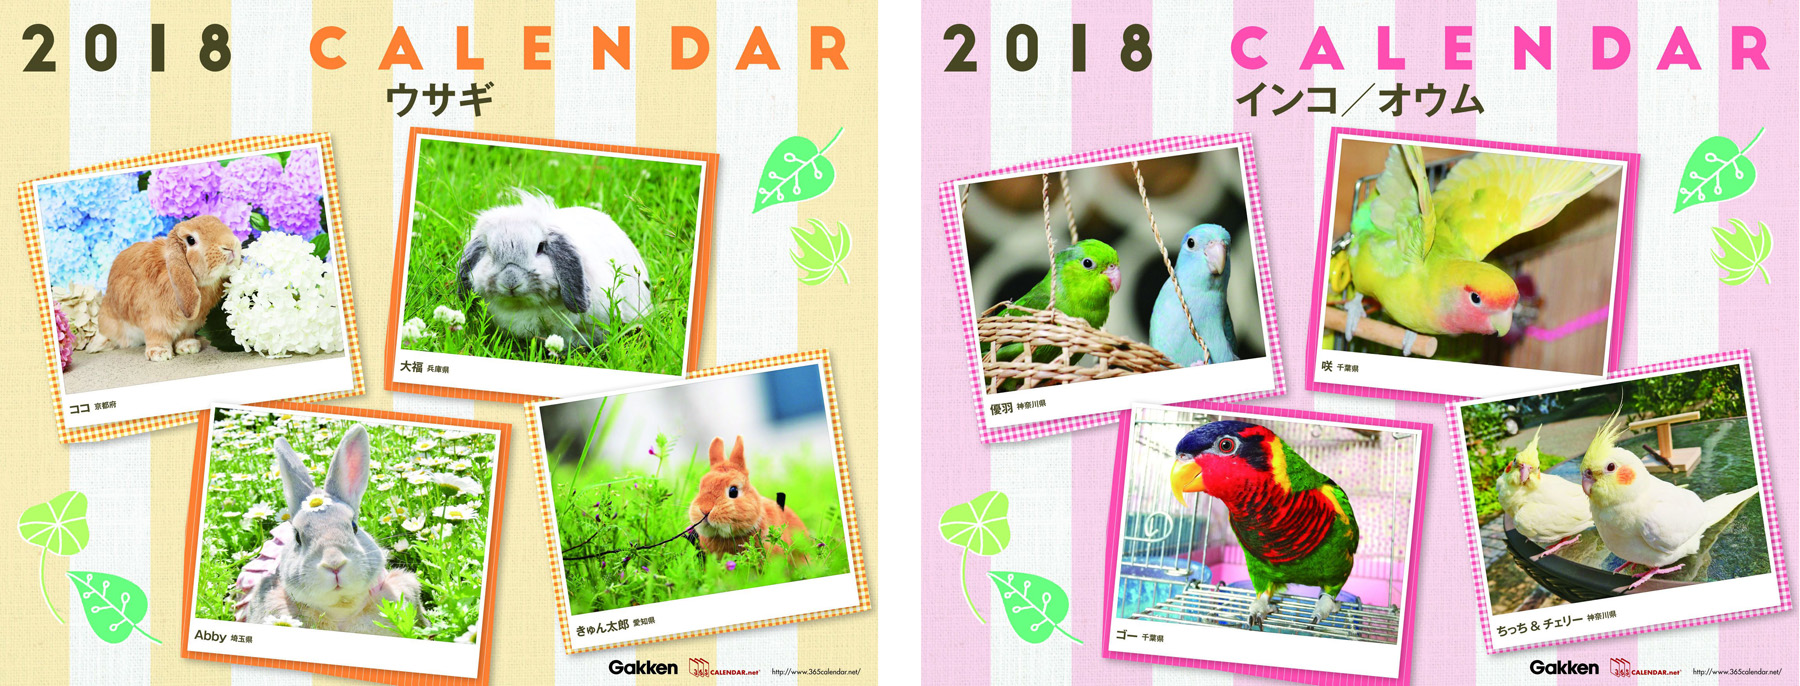 2018年版のカレンダー表紙